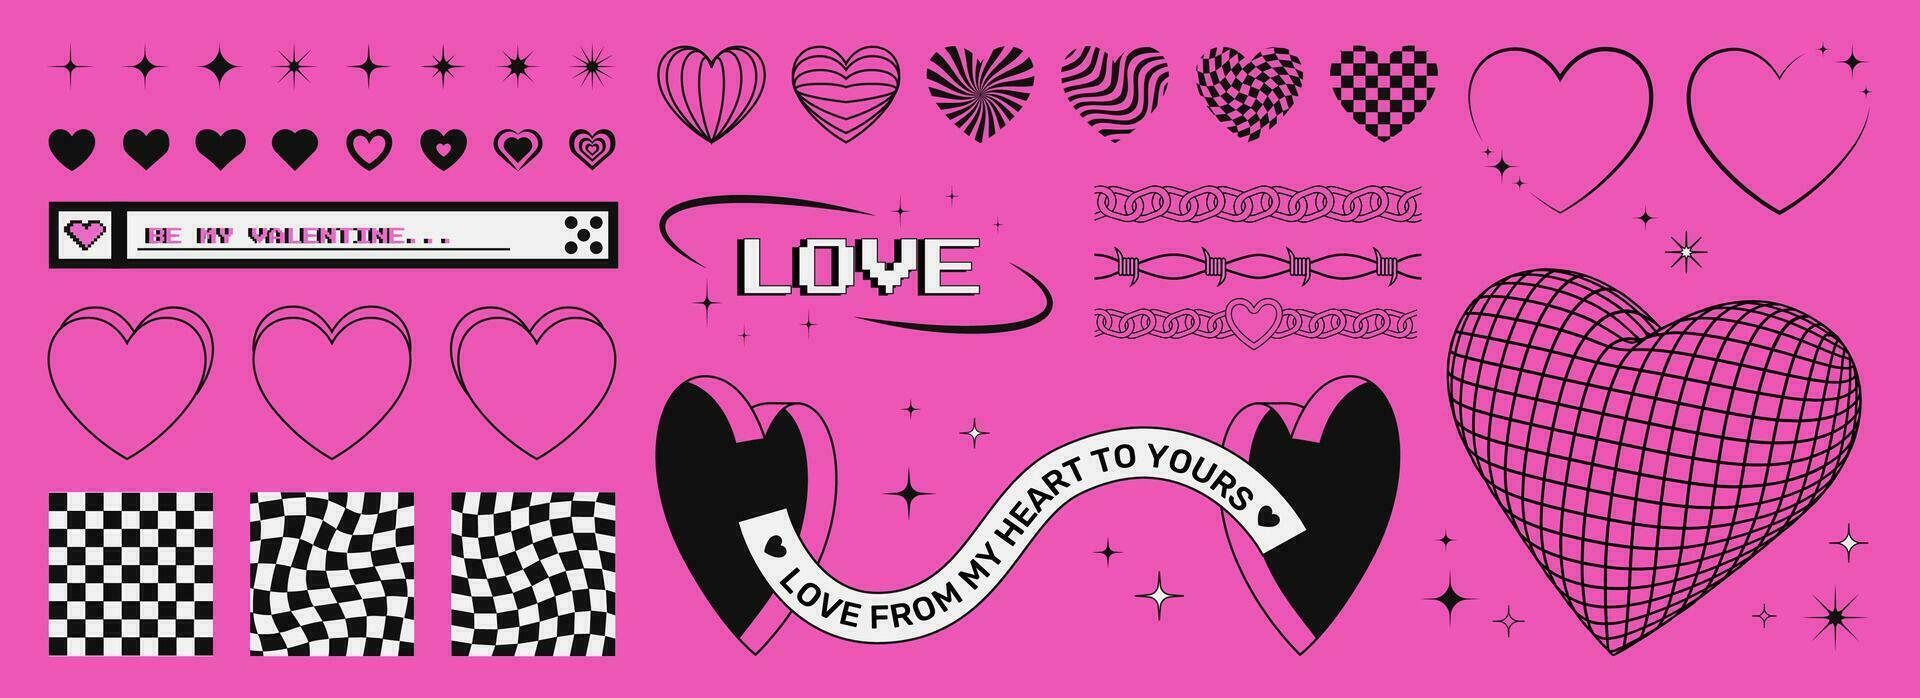 uppsättning av trendig hjärtans dag y2k grafisk former på en rosa syra bakgrund, hjärtan och stjärnor symboler, ramar, schackbräden, 3d hjärta och portar. vektor konst.